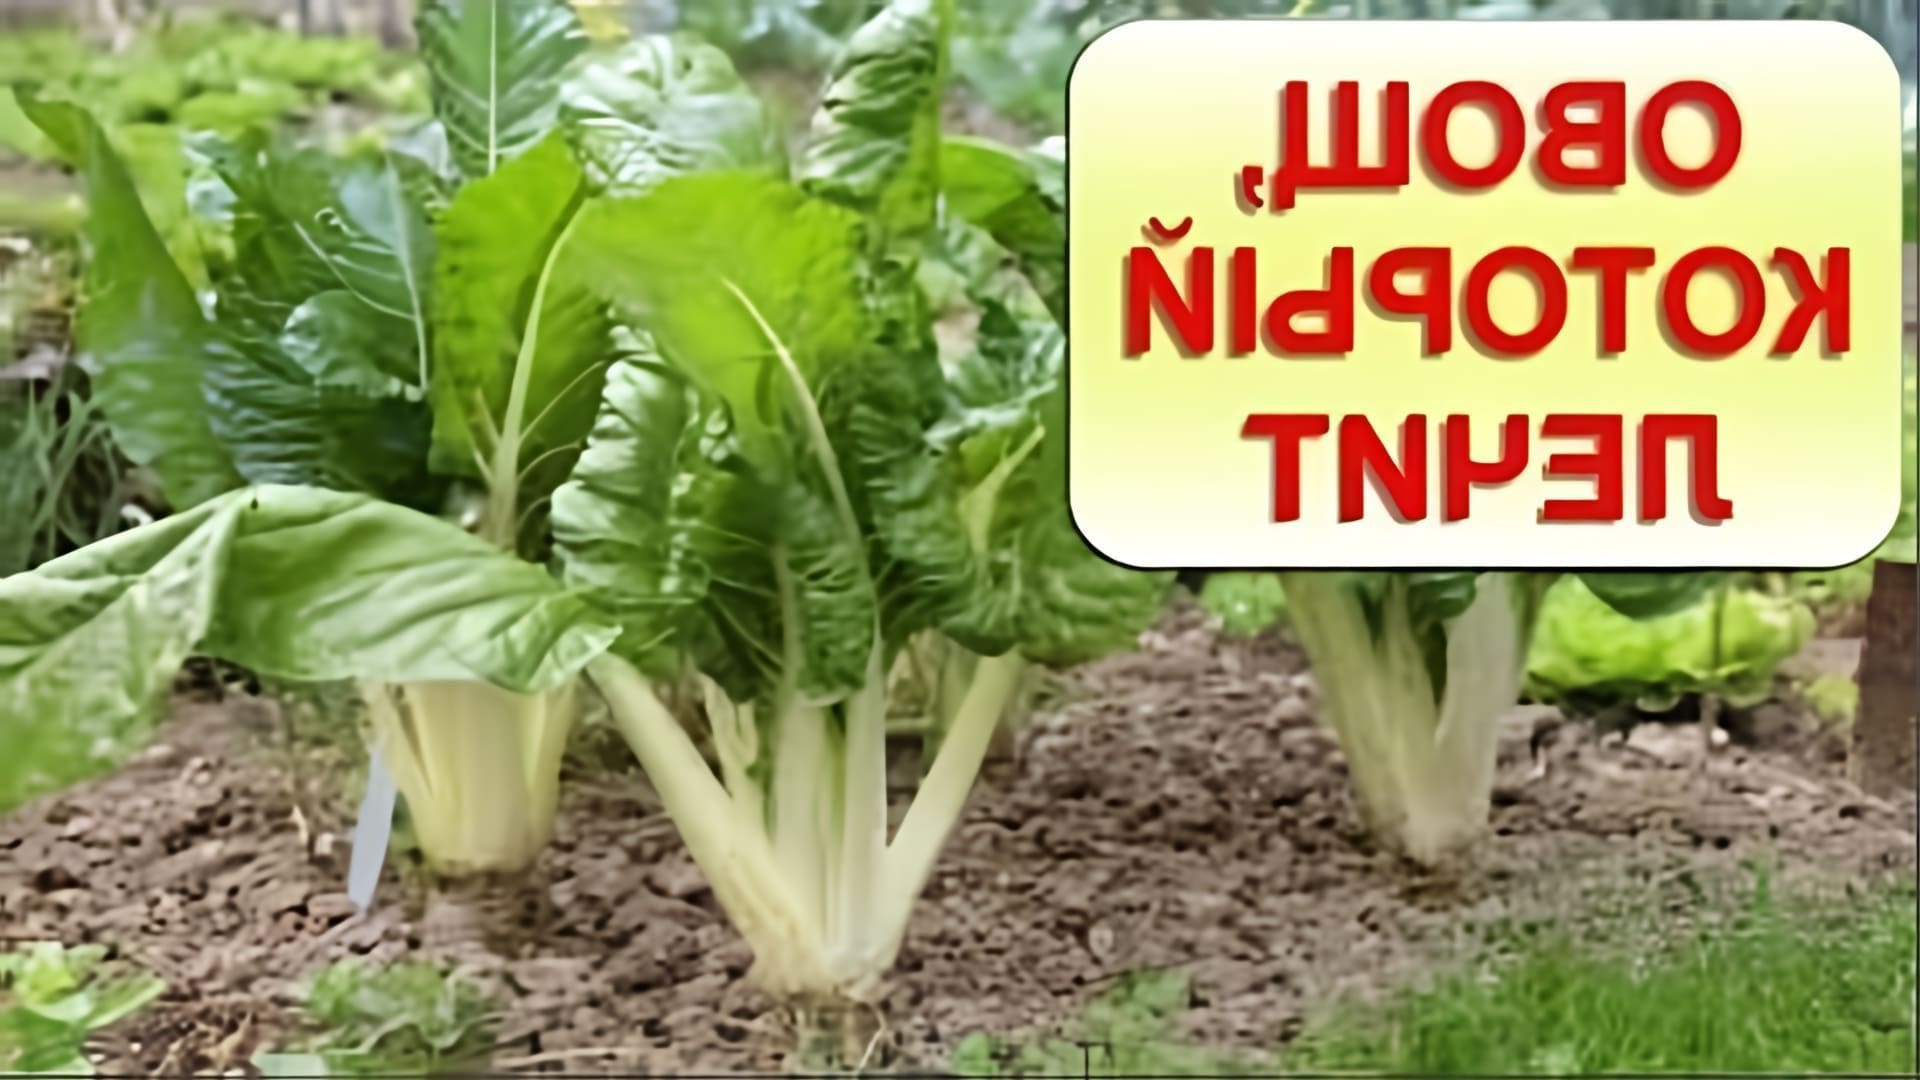 В этом видео рассказывается о мангольде - овоще, который замедляет процессы старения и убивает рак